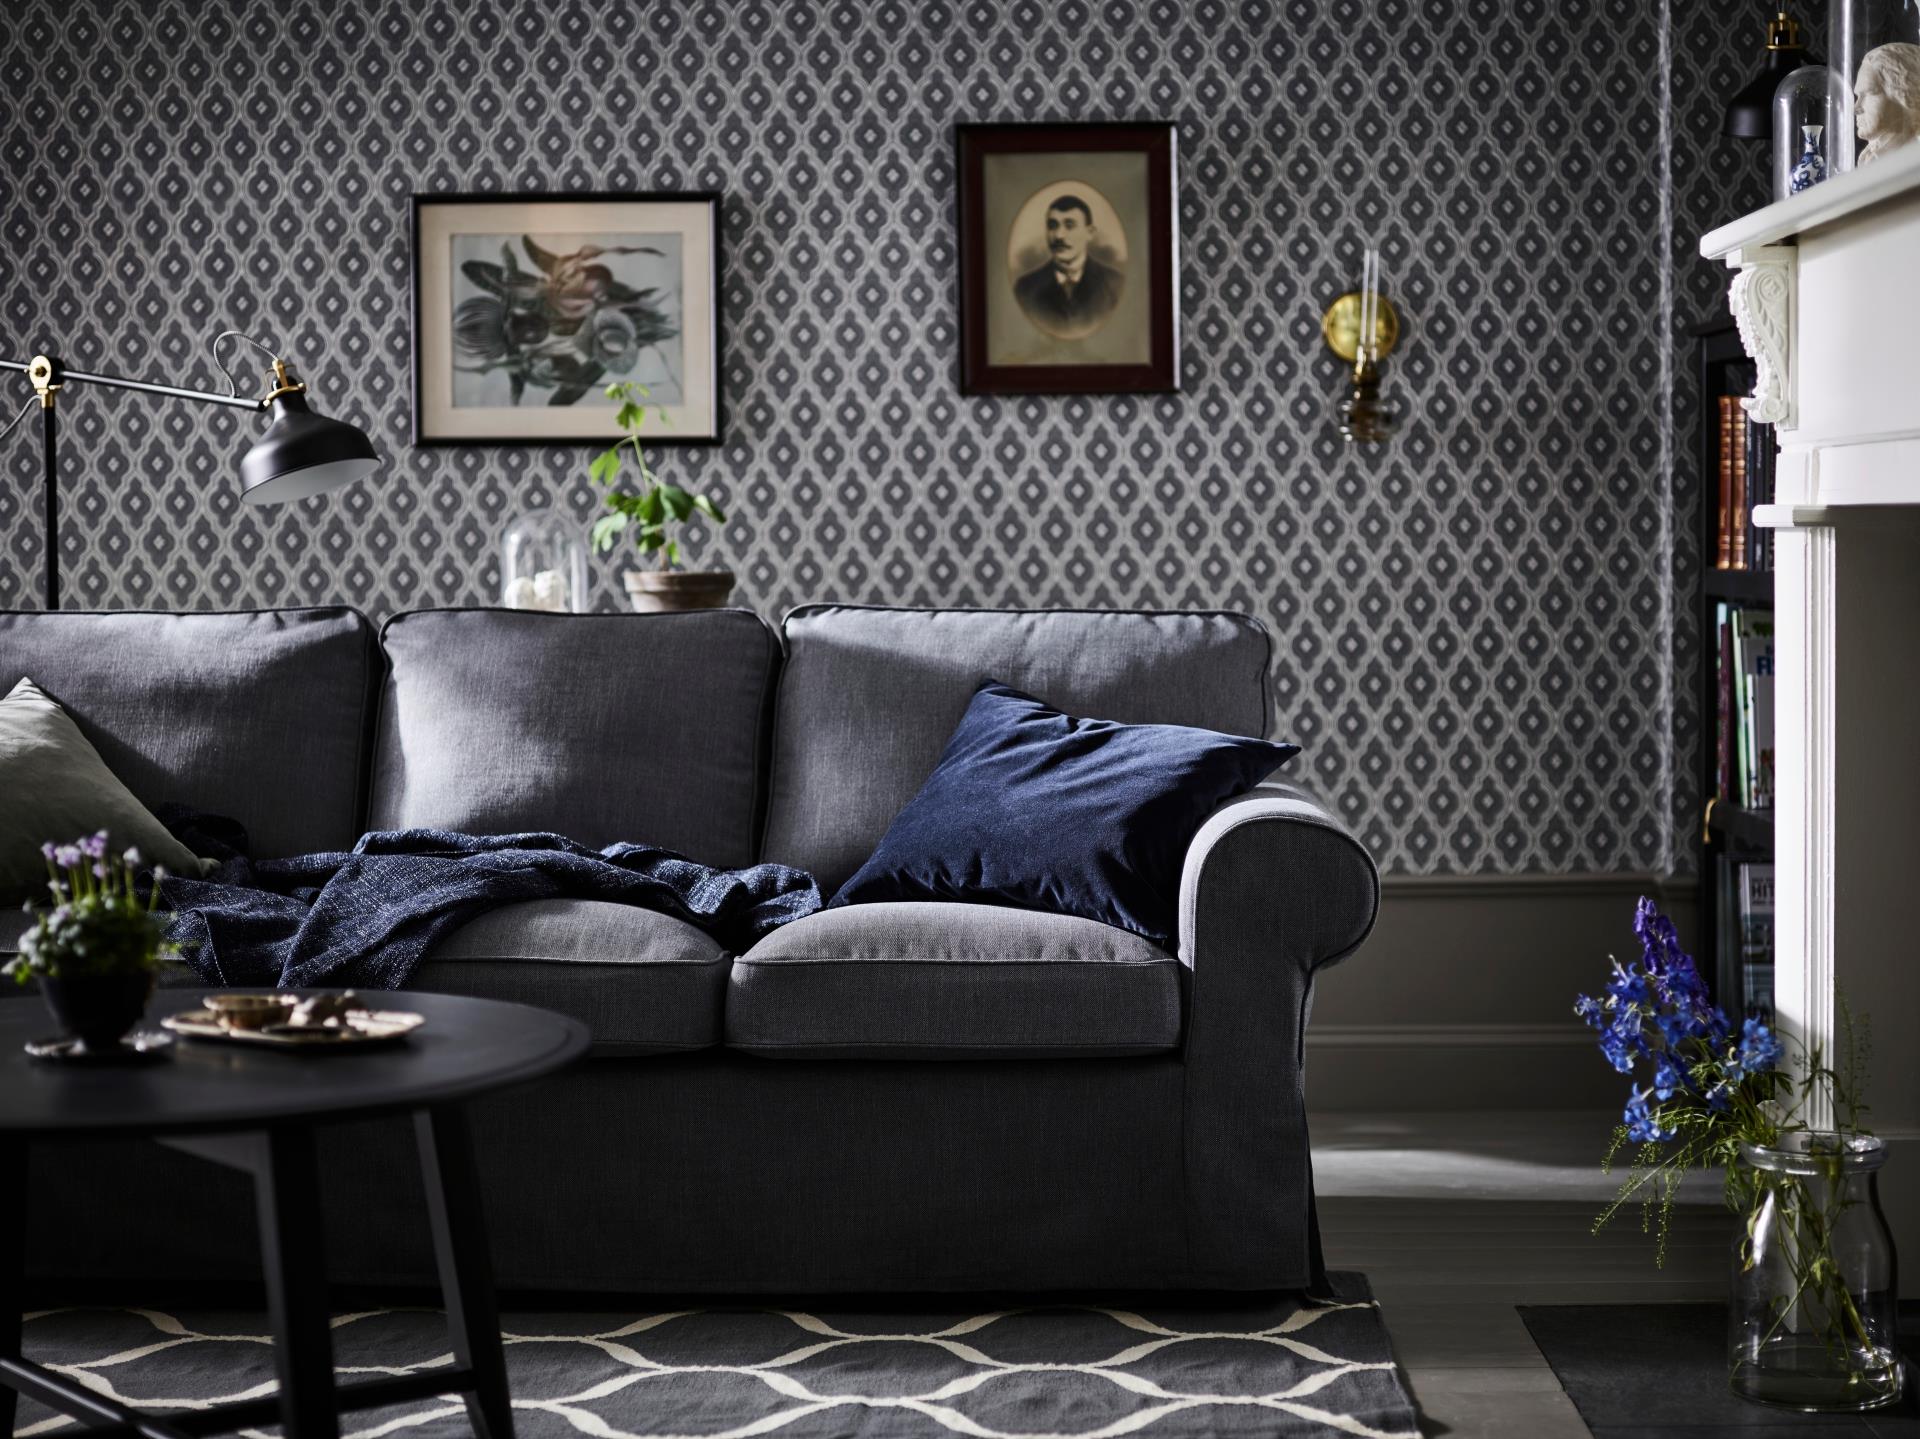 Ikea divani 2018: i modelli più belli per arredare la casa